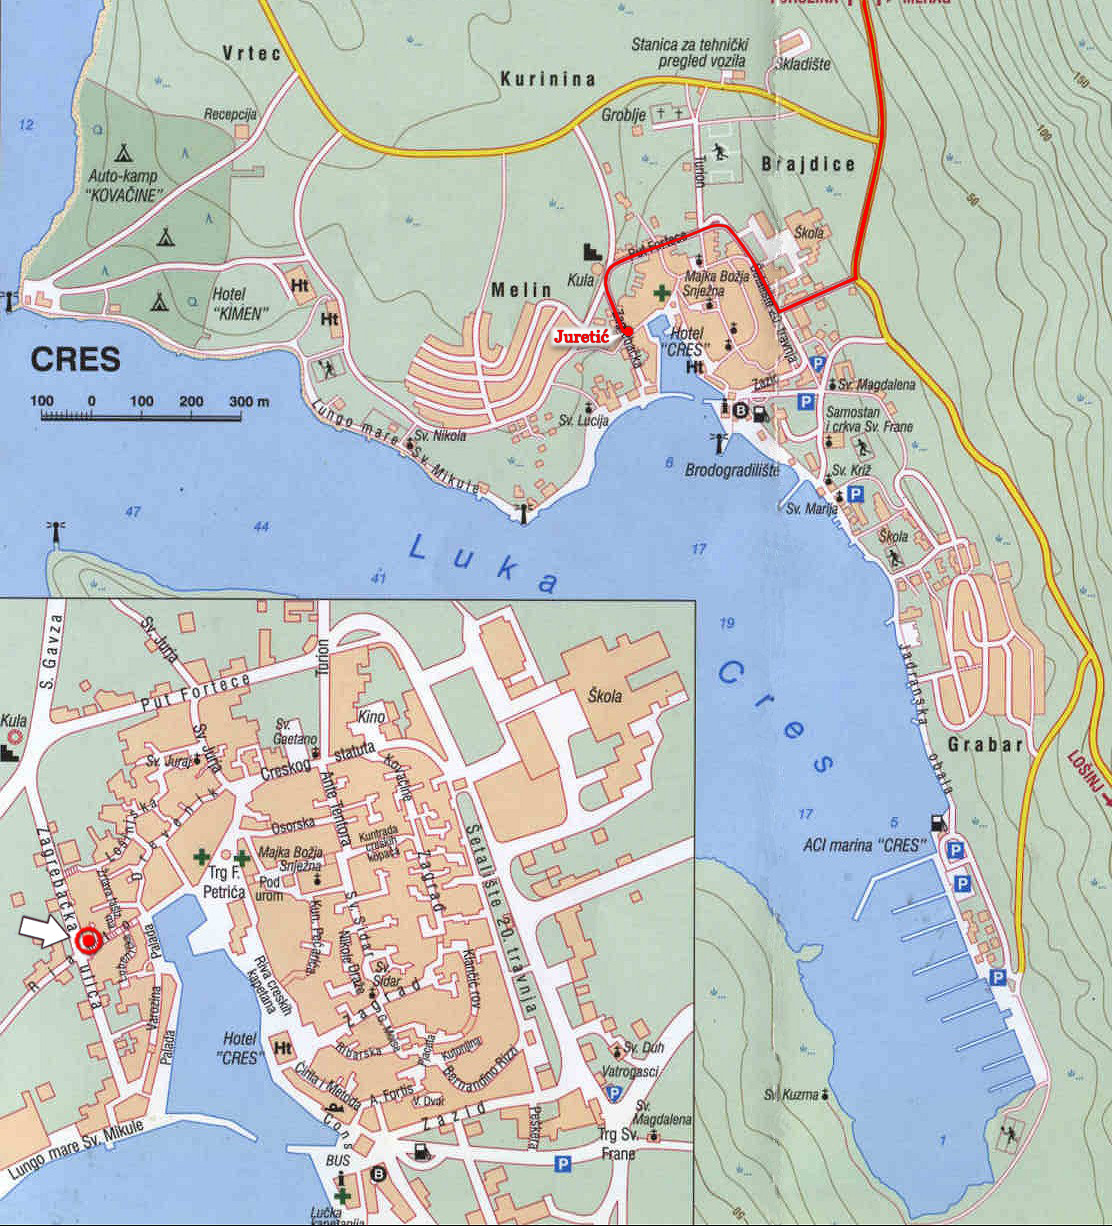 karta cresa Cres City Map   cres croatia • mappery karta cresa